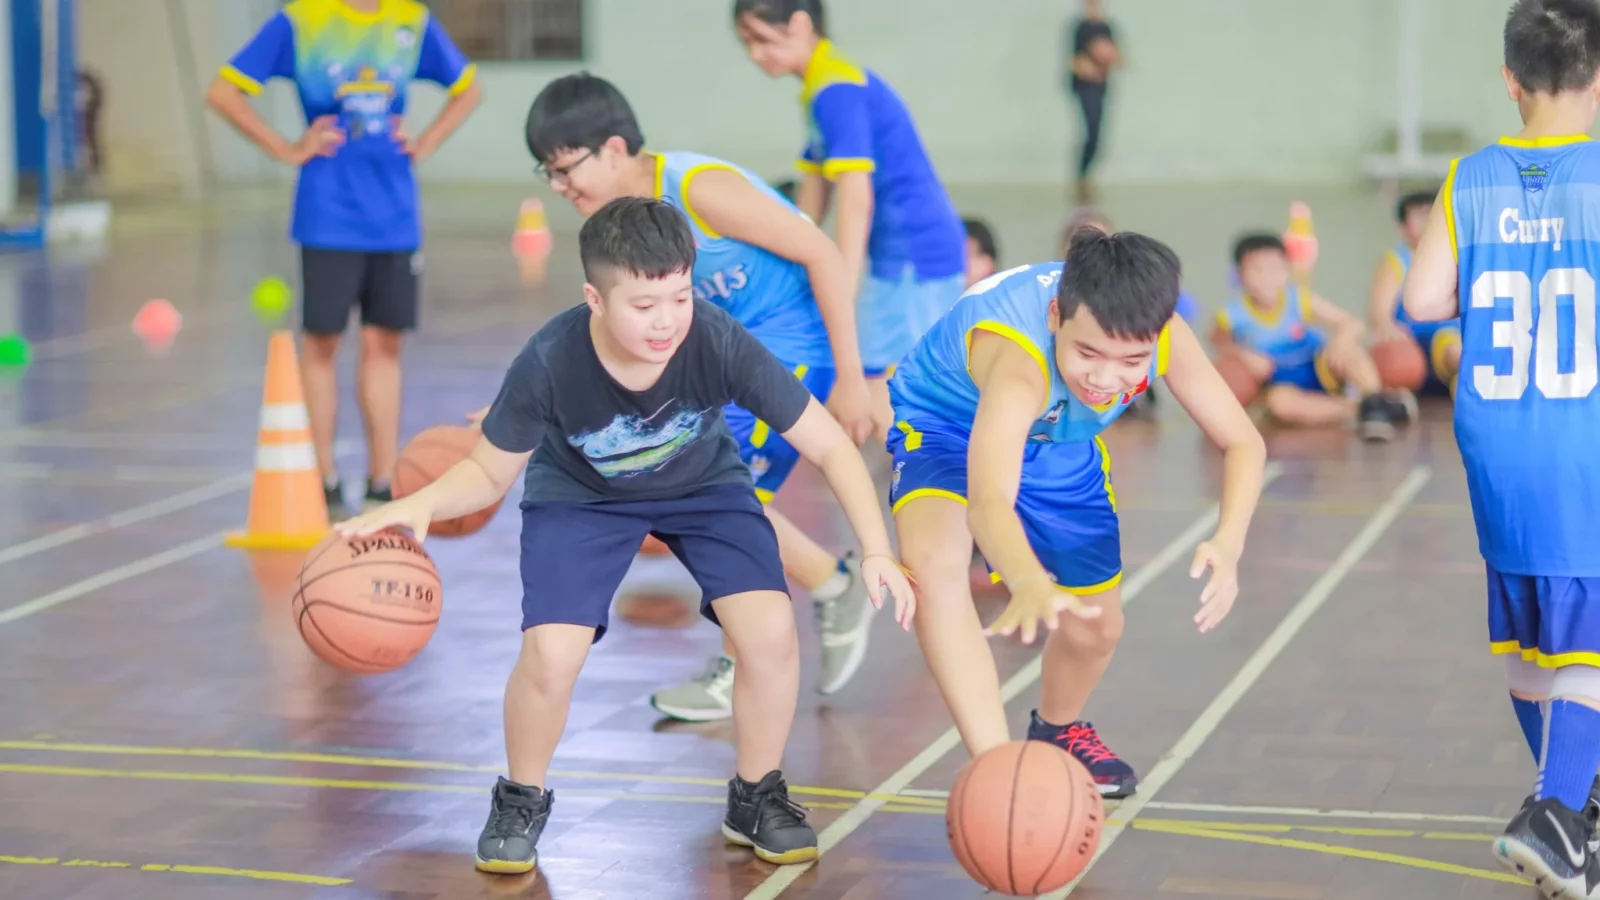 Lợi ích của việc chơi bóng rổ giúp chiều cao phát triển hiệu quả